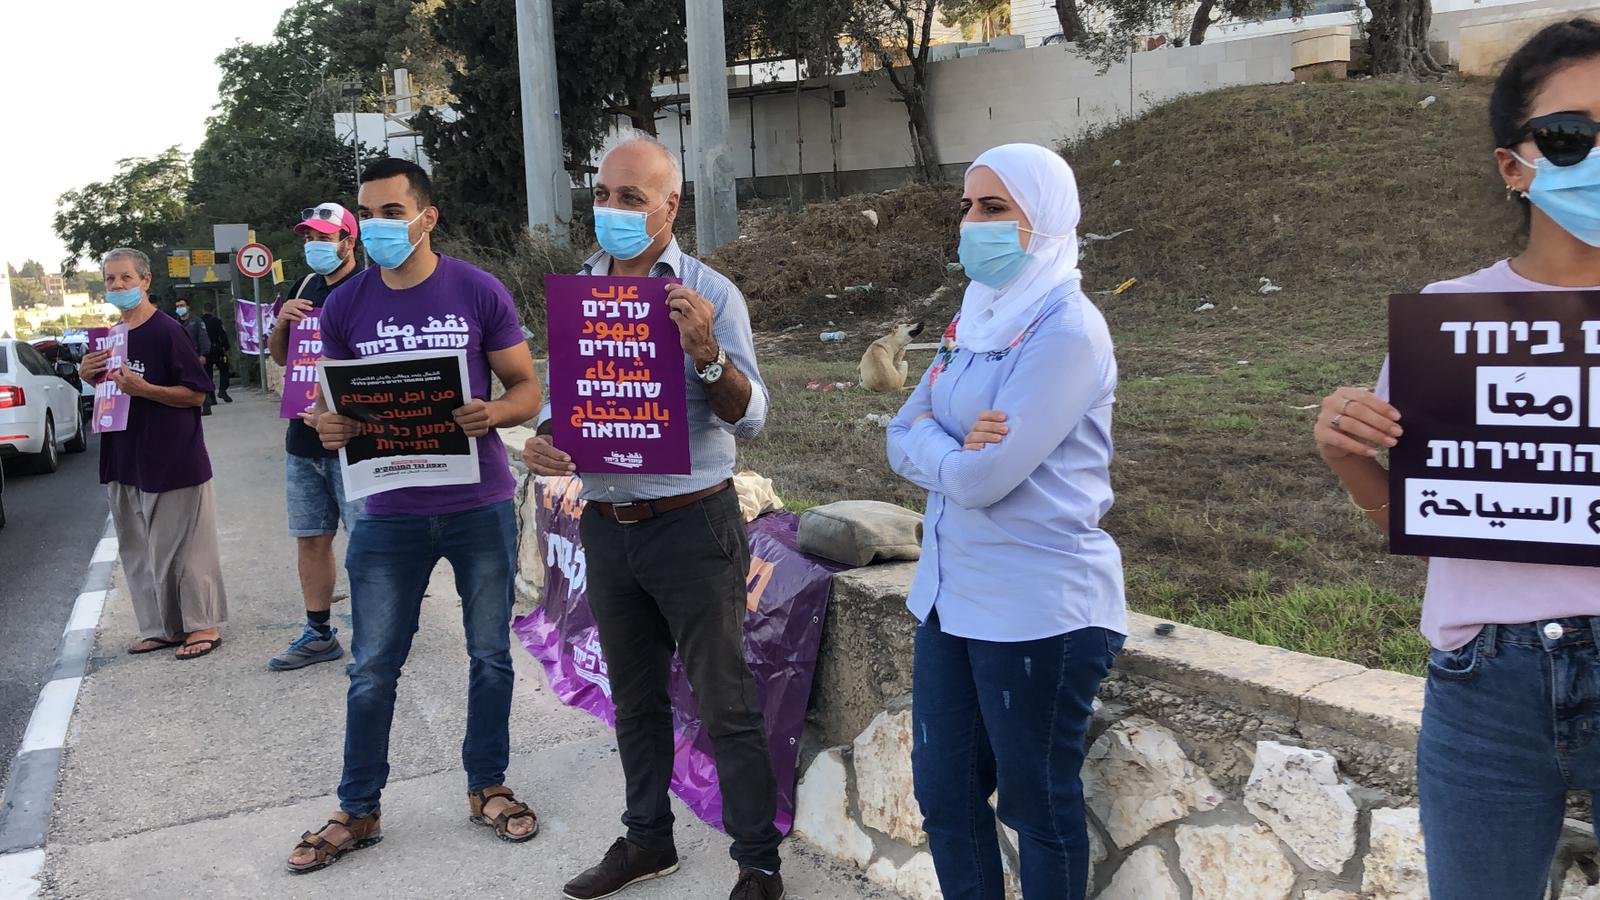 وقفة احتجاجية امام مبنى المحاكم في الناصرة تطالب بالعدالة الاجتماعية وتغيير المنظومة الحكومية الحالية-2